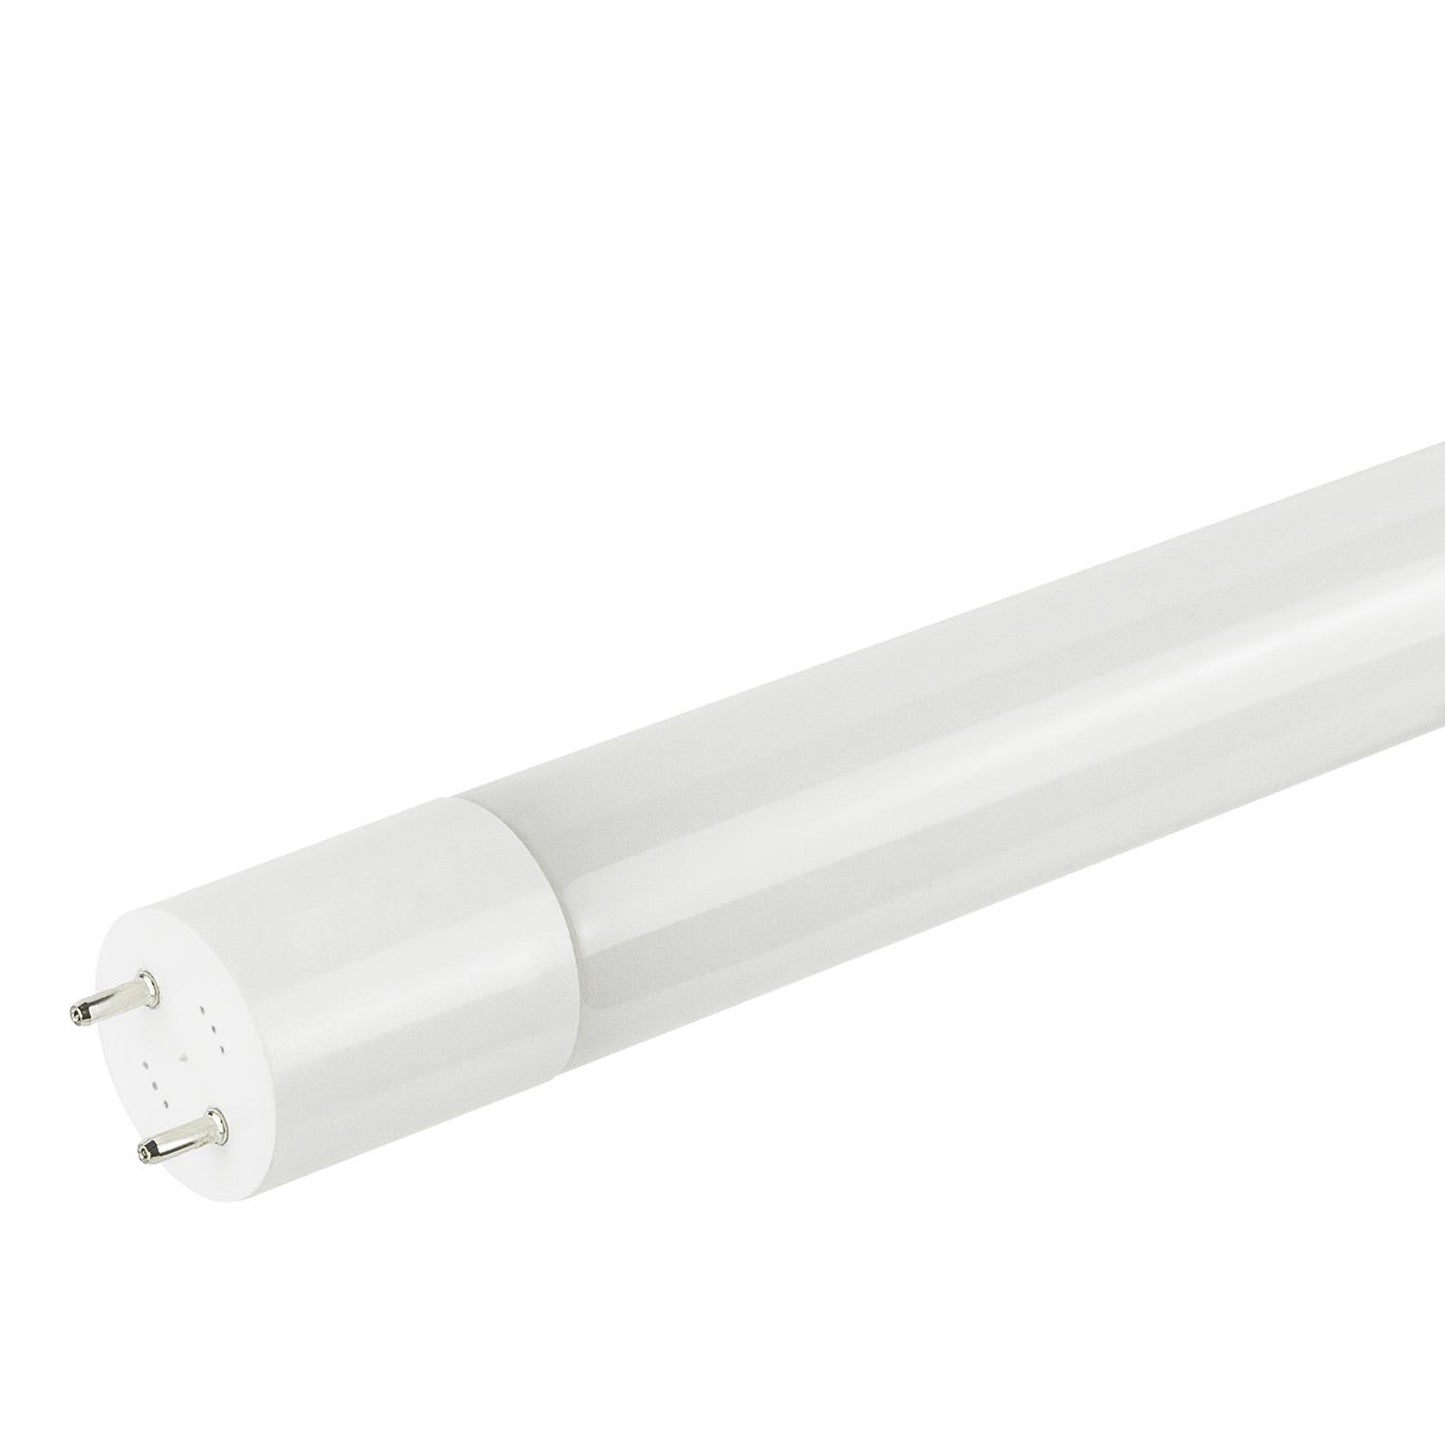 Sunlite T8/LED/IS/4'/15W/35K 15 Watt T8 Lamp Medium Bi-Pin (G13) Base Neutral White